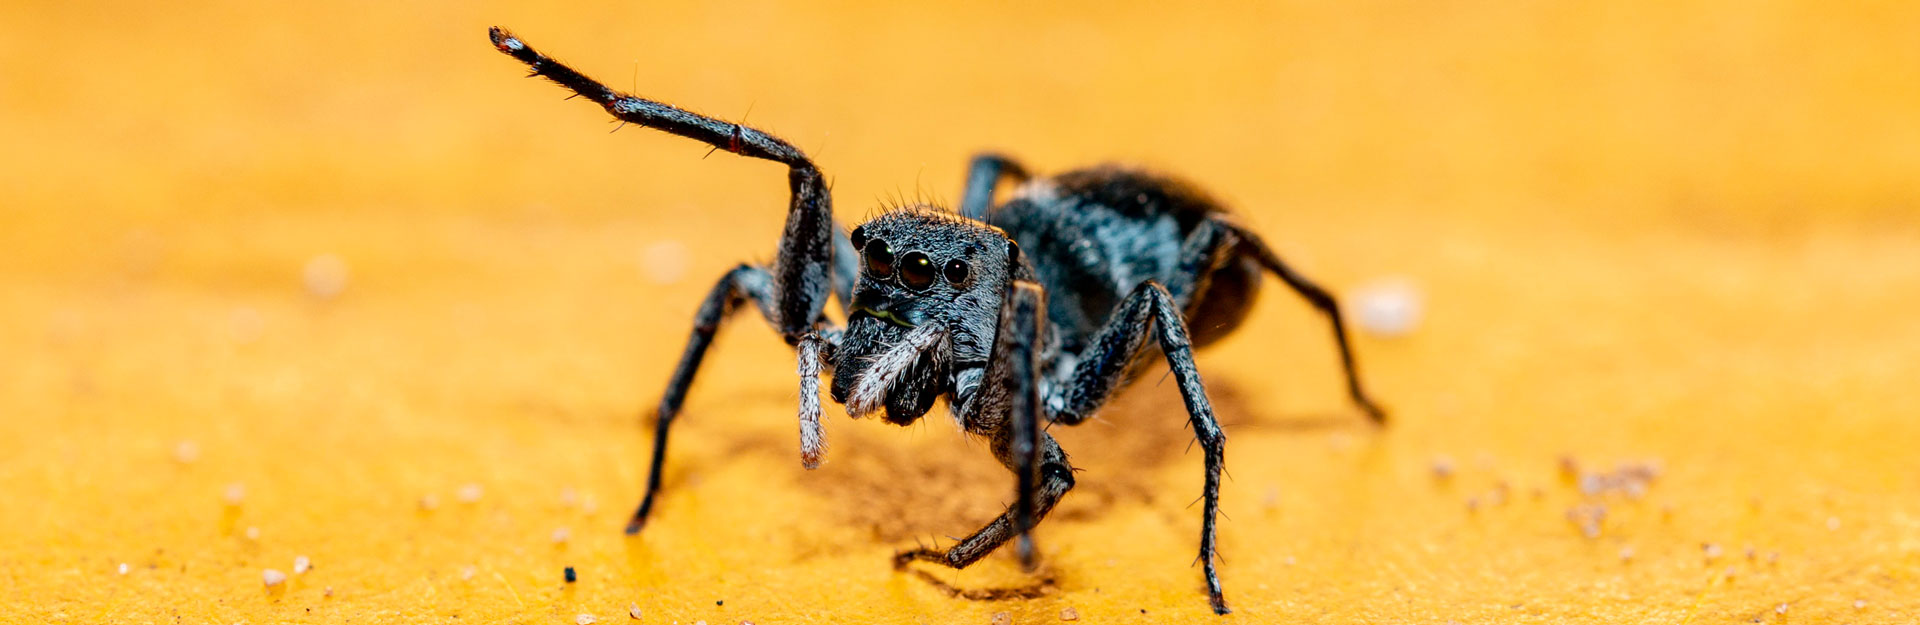 Makrofotografie Insekten Spinne